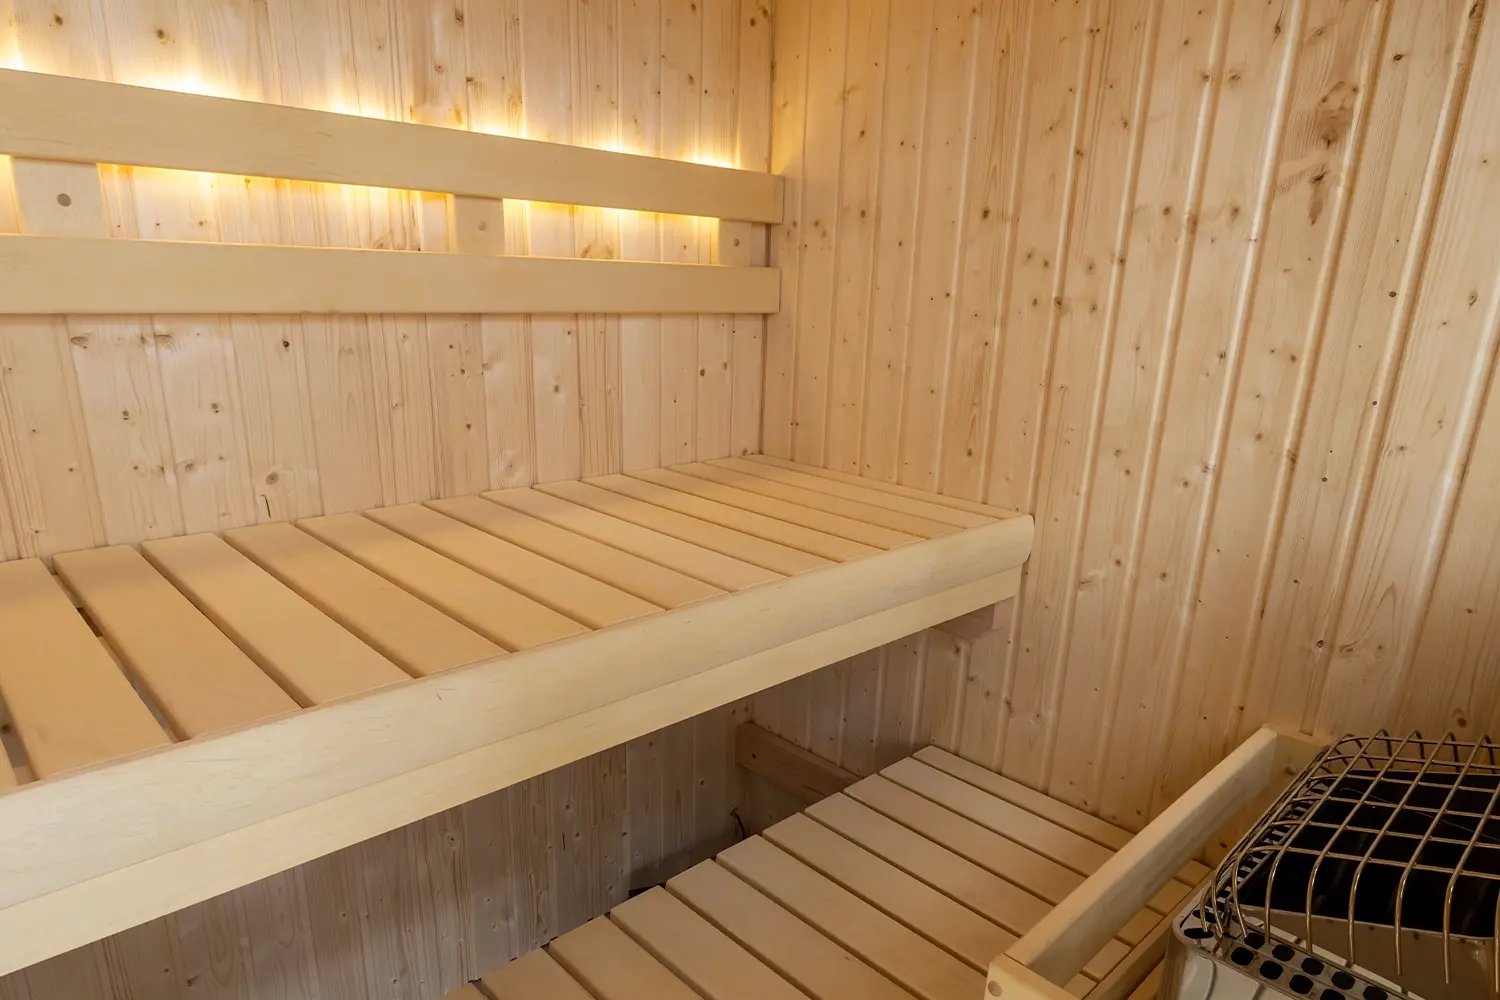 NorthStar Outdoor_Outdoor saunas made simple